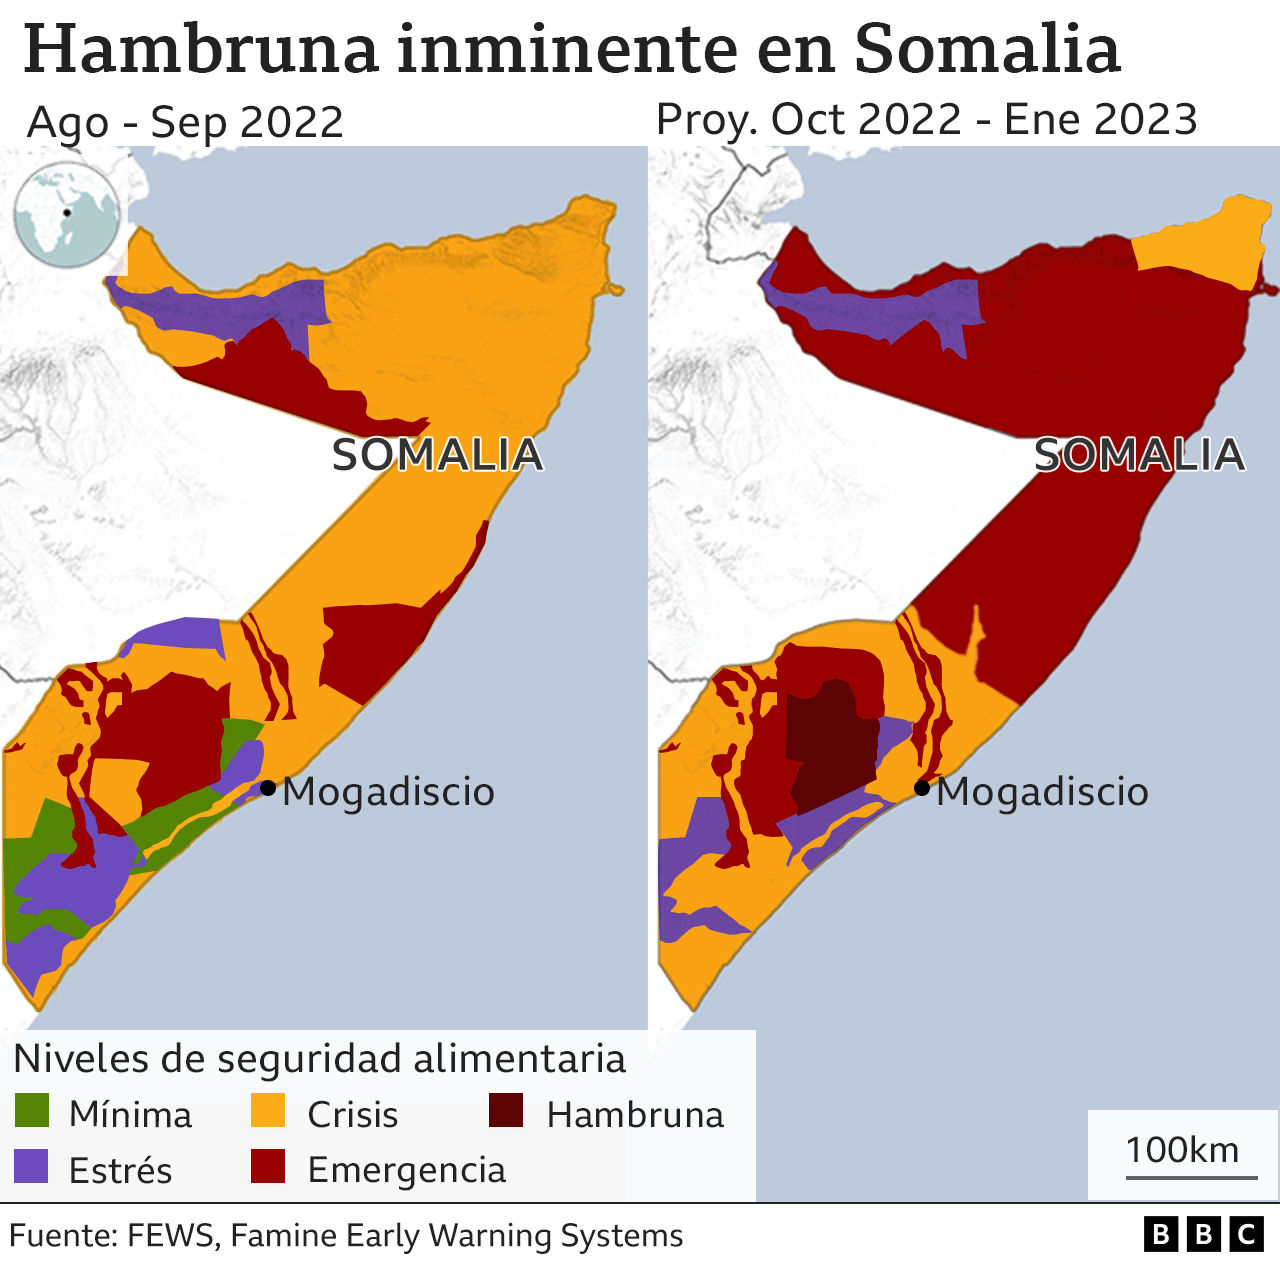 Mapa de Somalia que muestra los sitios afectados por la hambruna